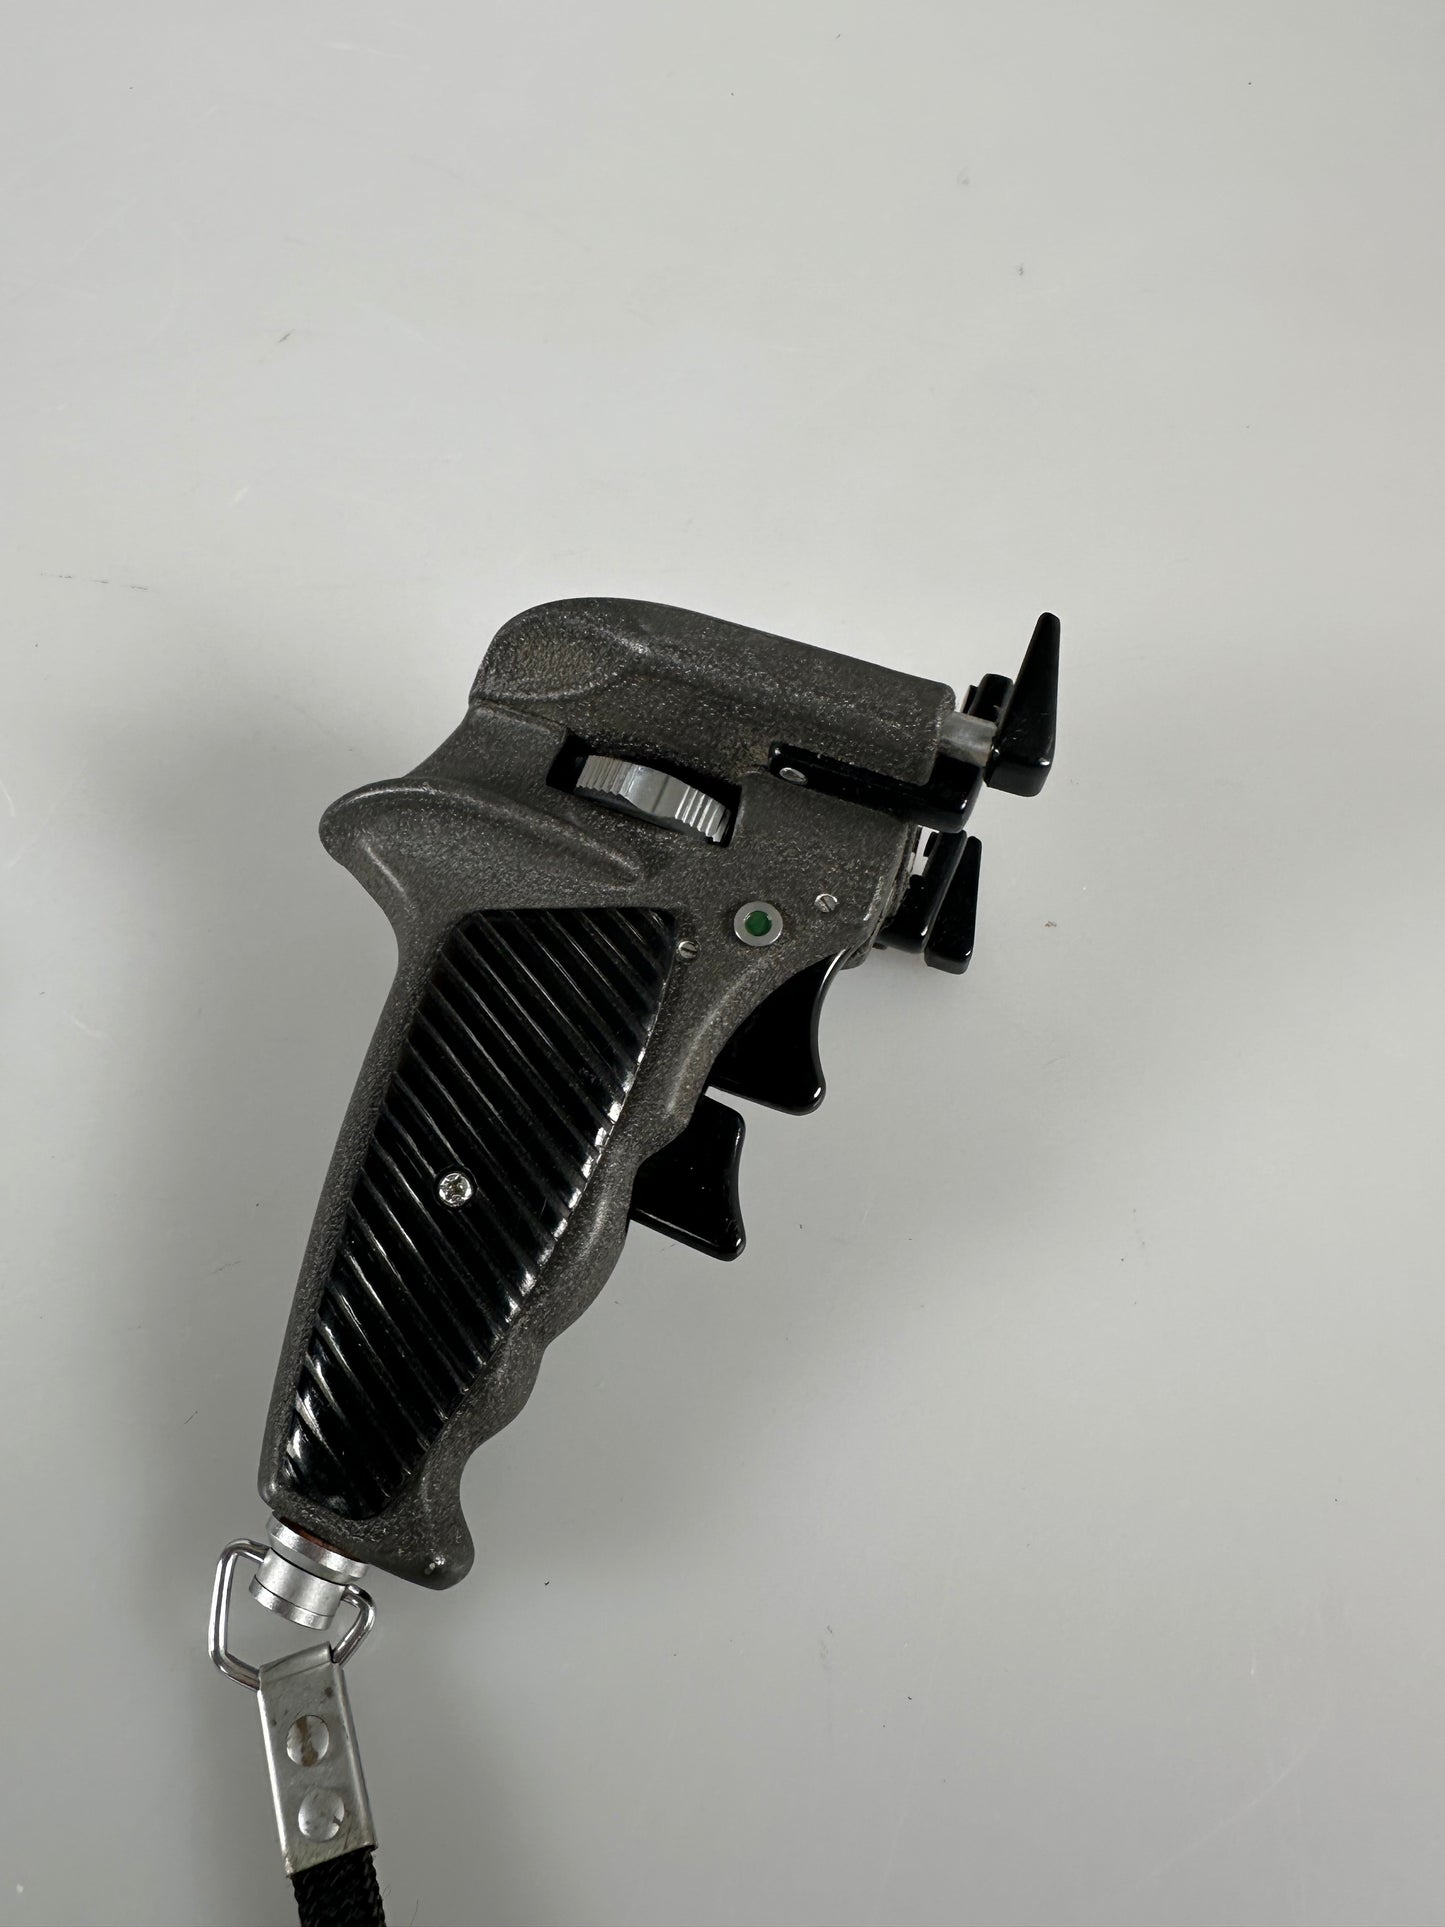 Zenza Bronica Pistol Hand Grip for EC EC-TL S2 C2